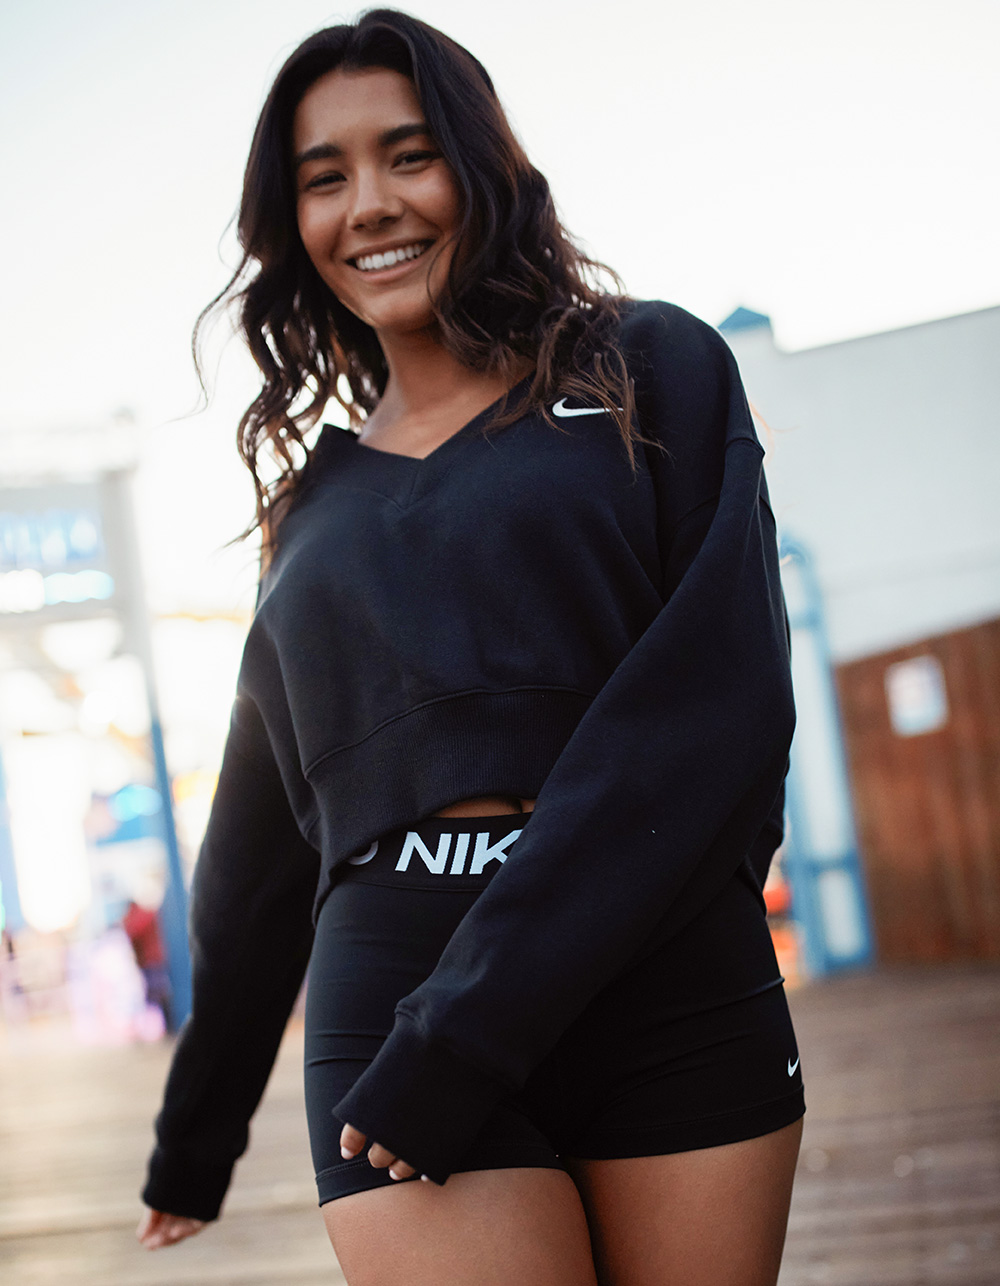 Nike Sportswear Phoenix Fleece Pants for women, black! Buy online - HERE